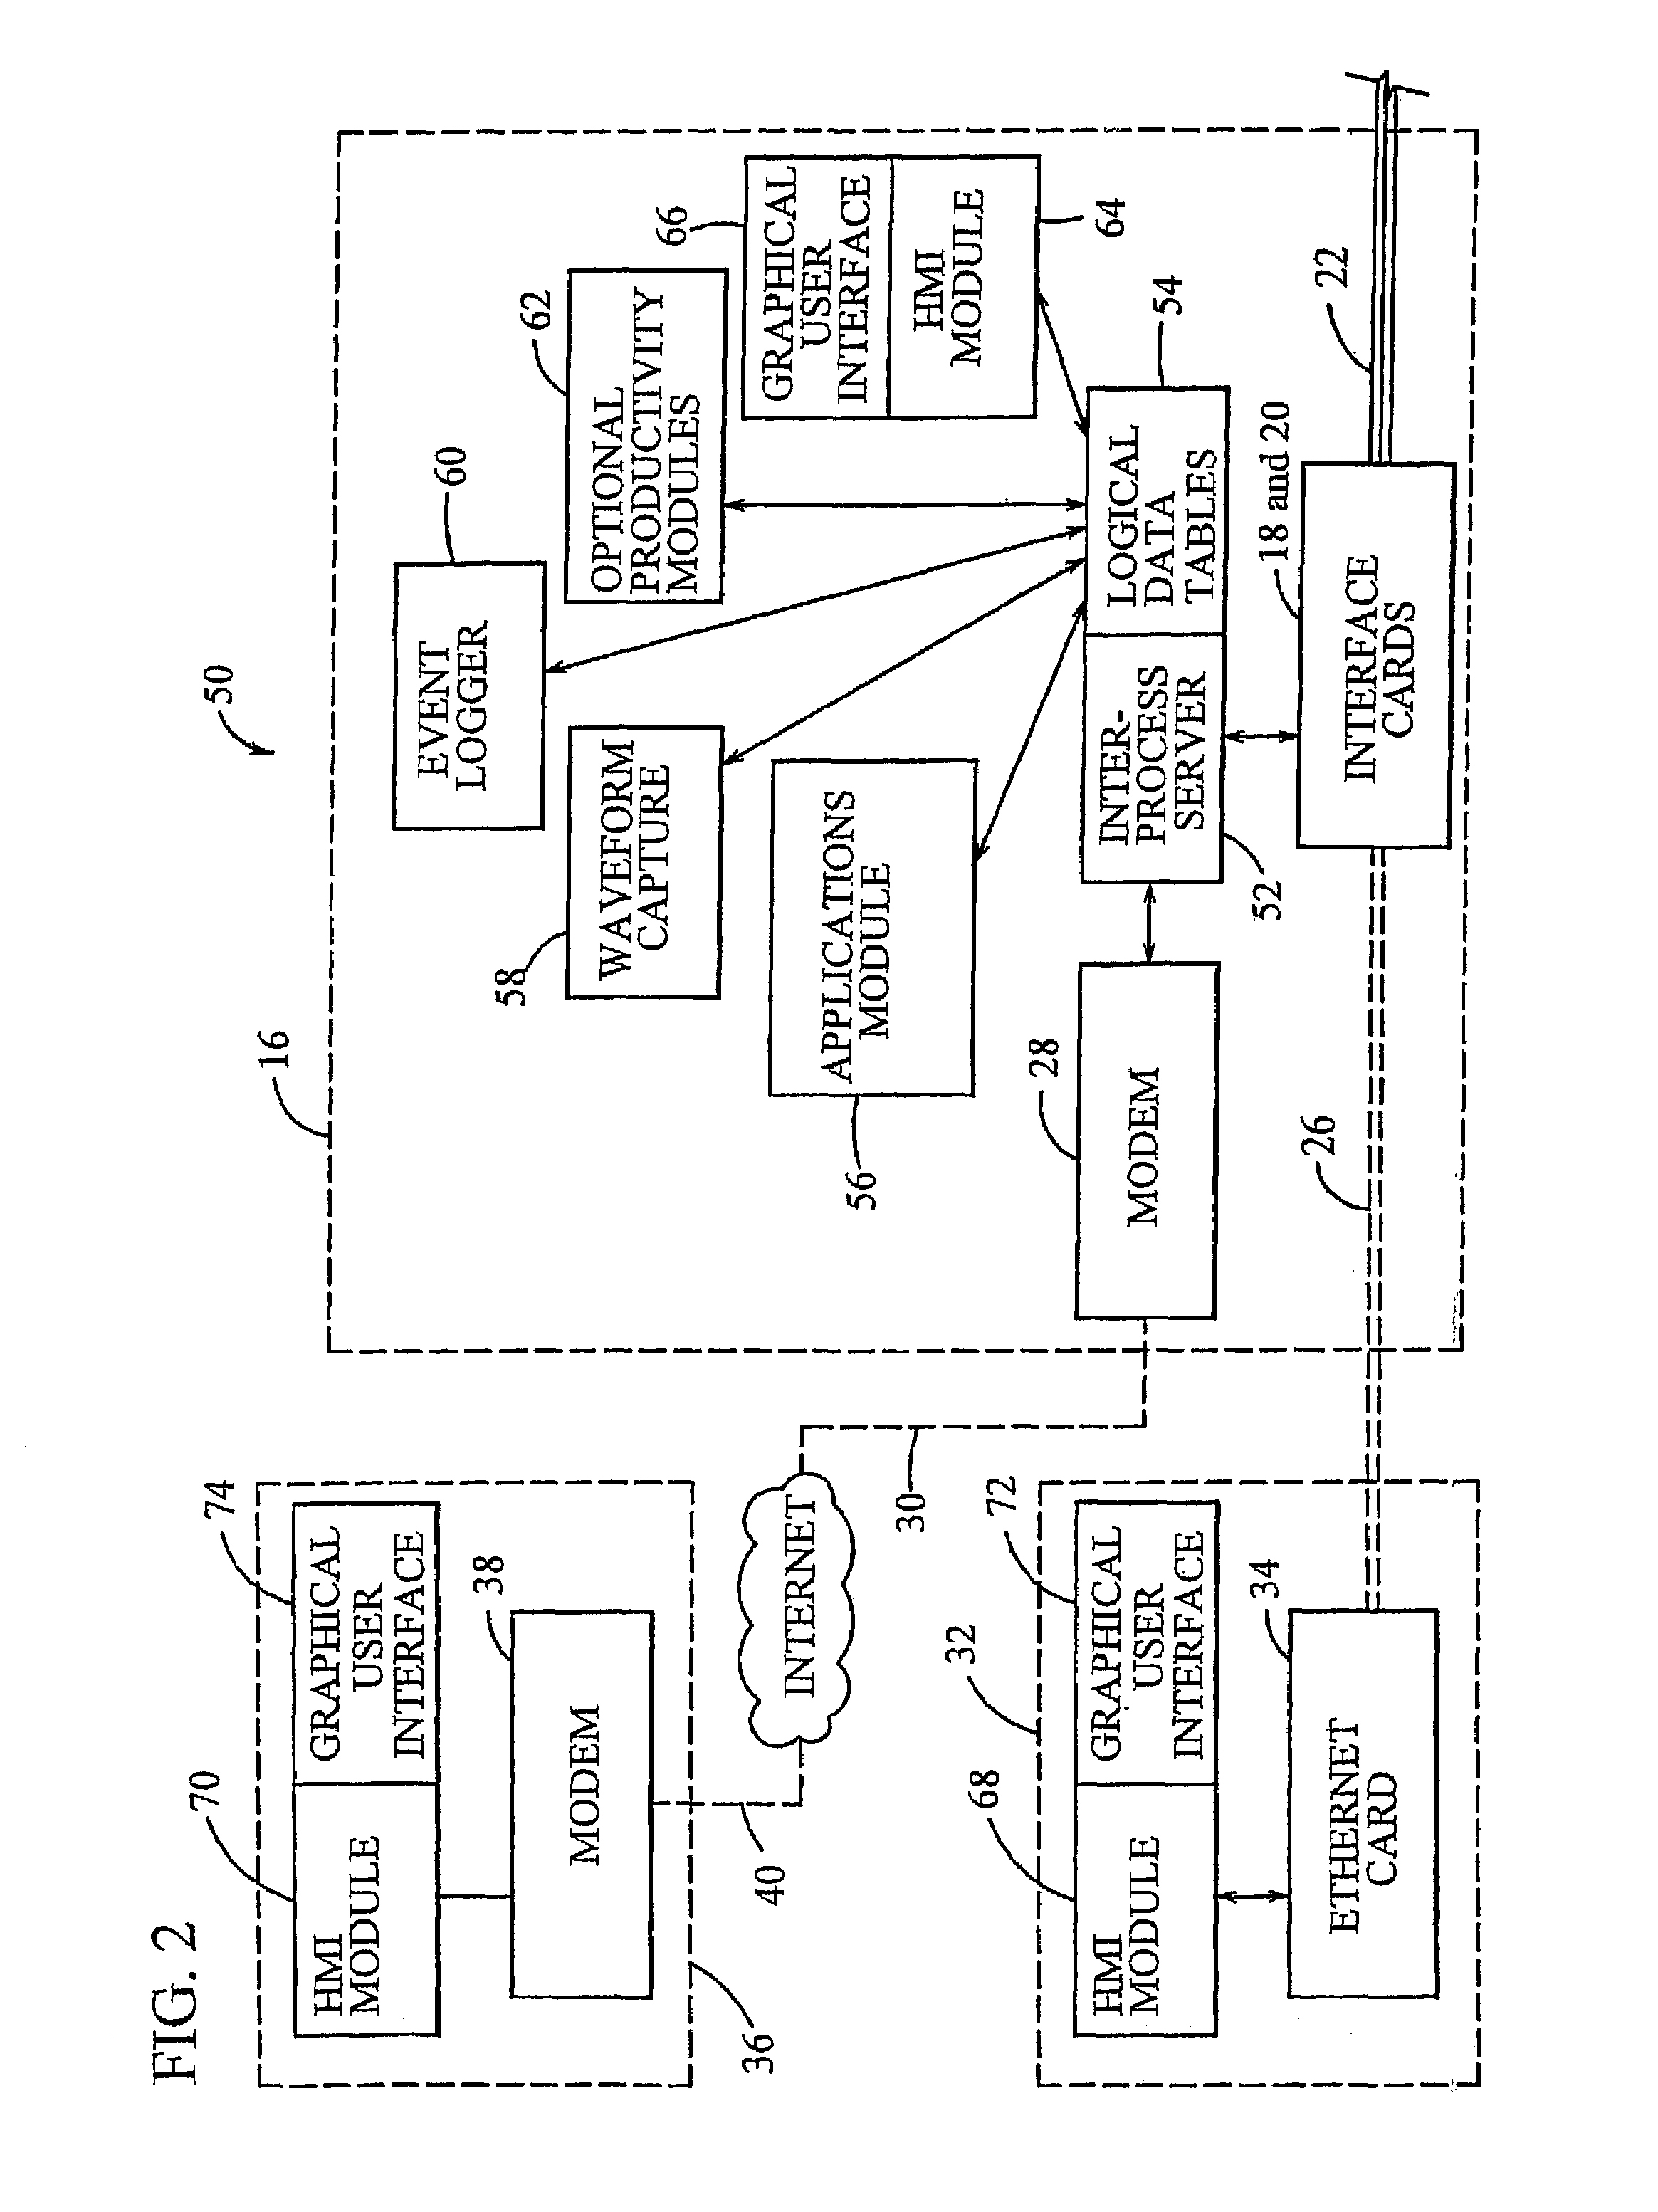 Virtual modular relay device